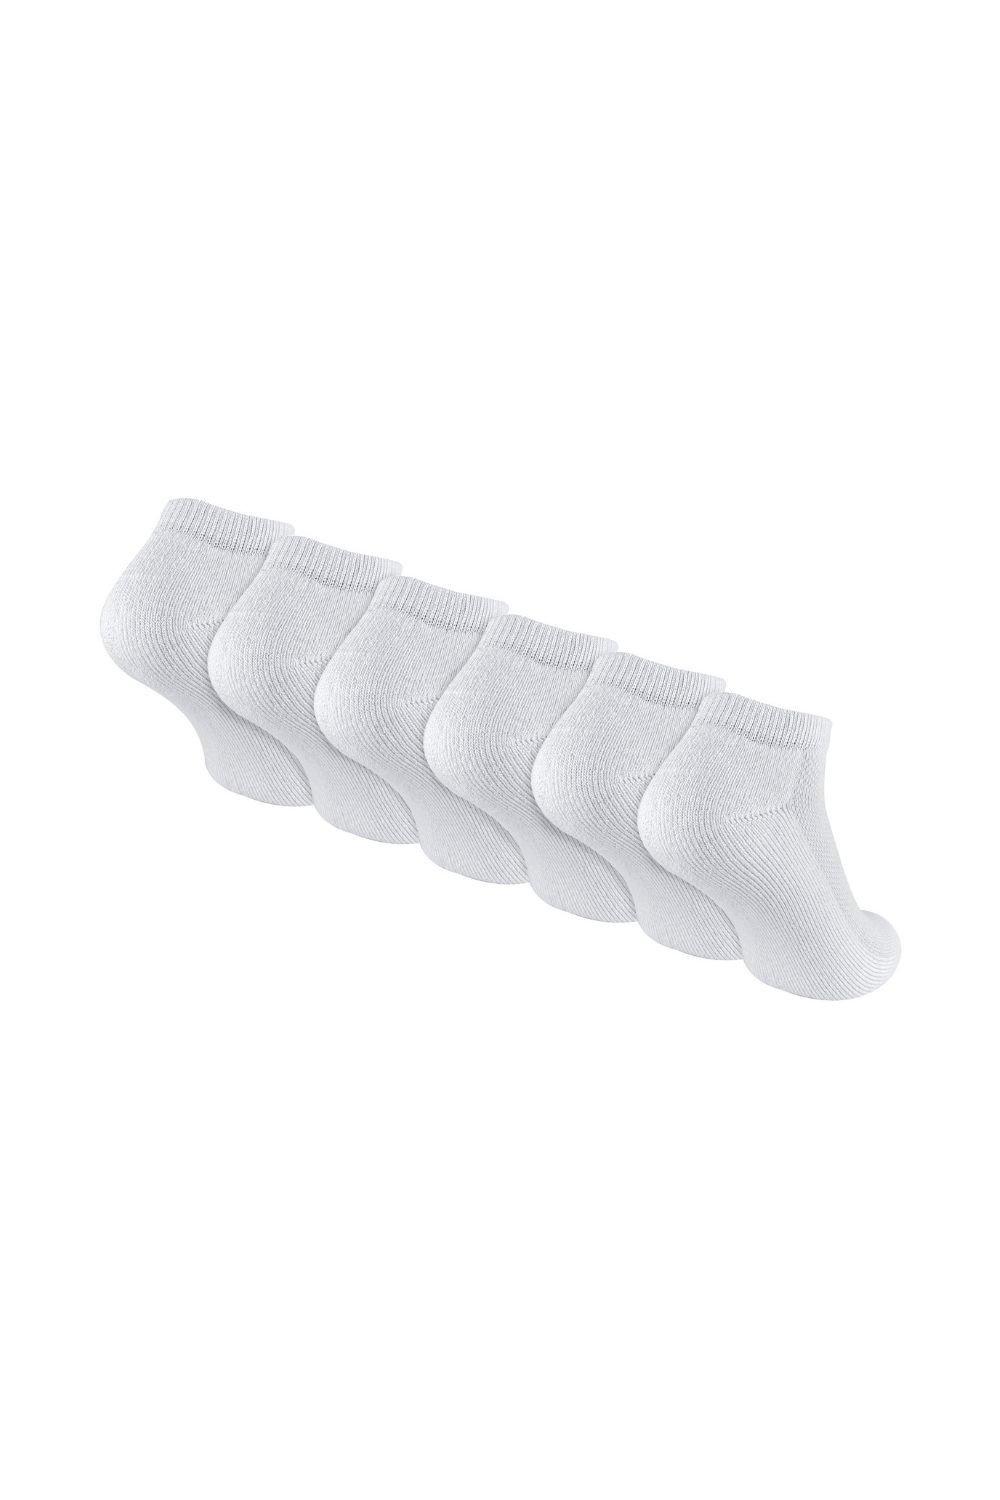 Набор из 6 пар белых бамбуковых спортивных носков Sock Snob, белый набор из 6 хлопковых коротких спортивных носков для тренажерного зала sock snob белый